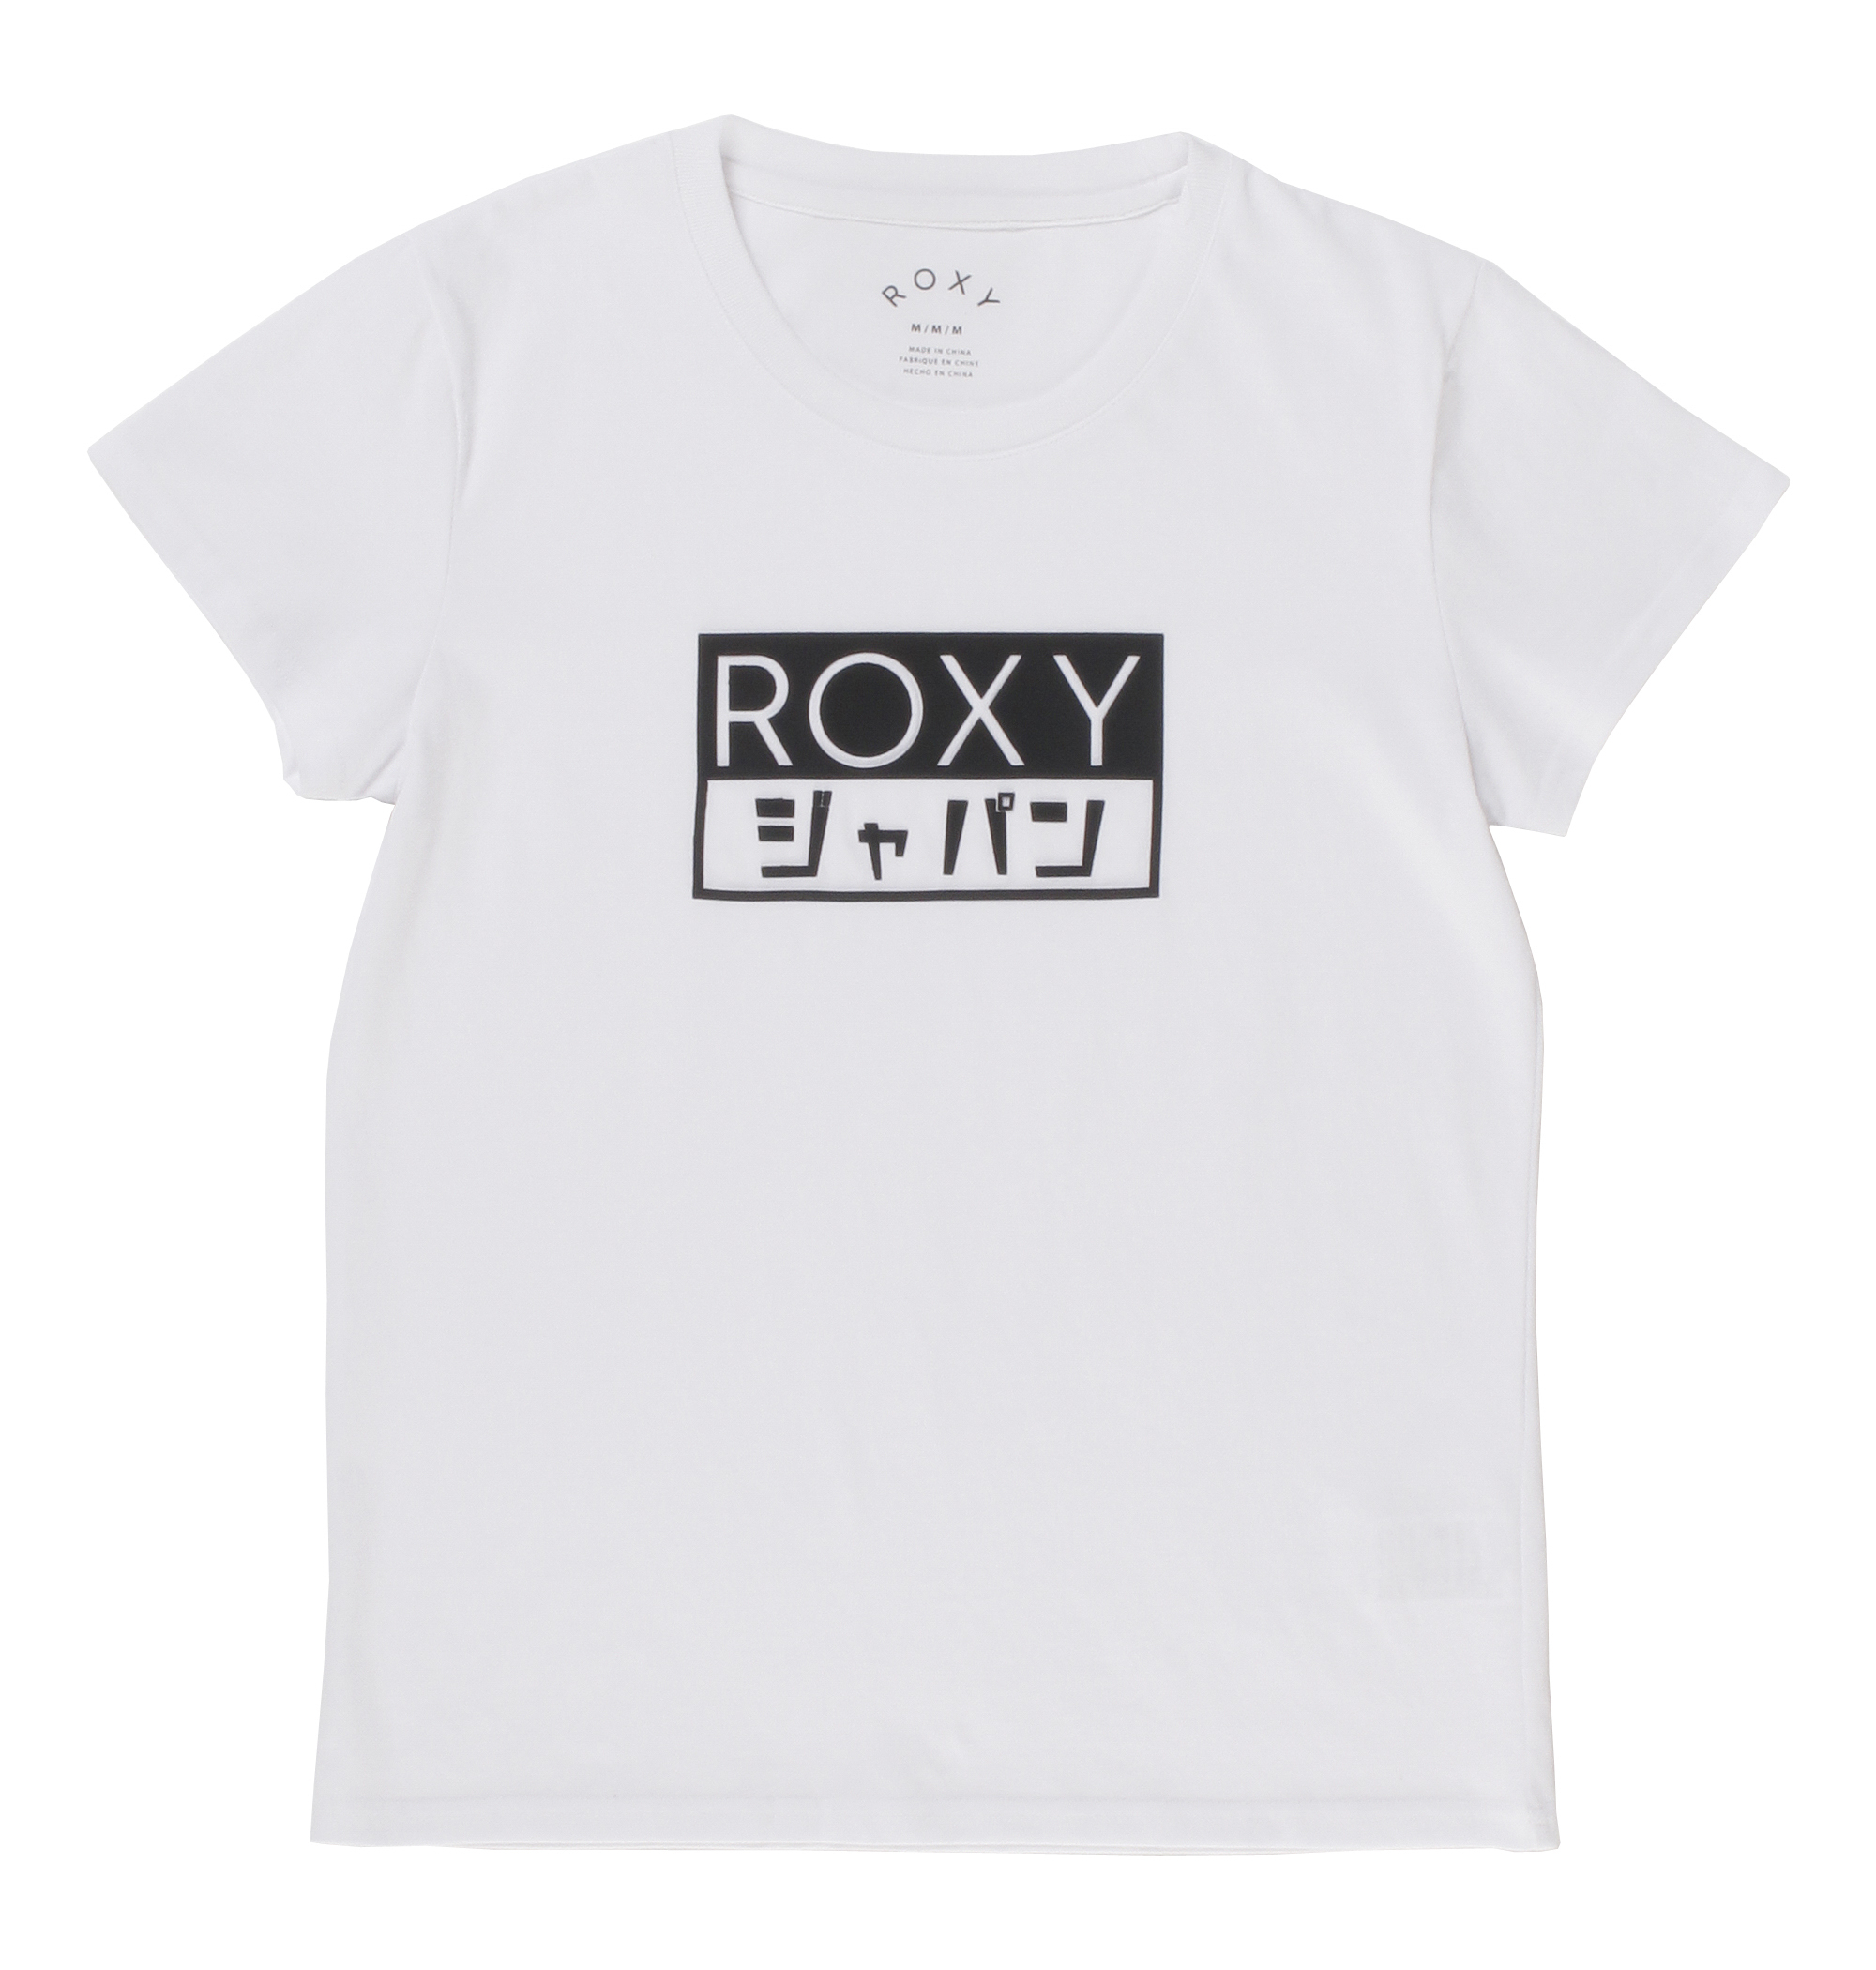 30%OFF！ROXY BOX TEE ボックス状のラバープリントにカタカナロゴを取り入れ、目を引くデザインに仕上げたTシャツ